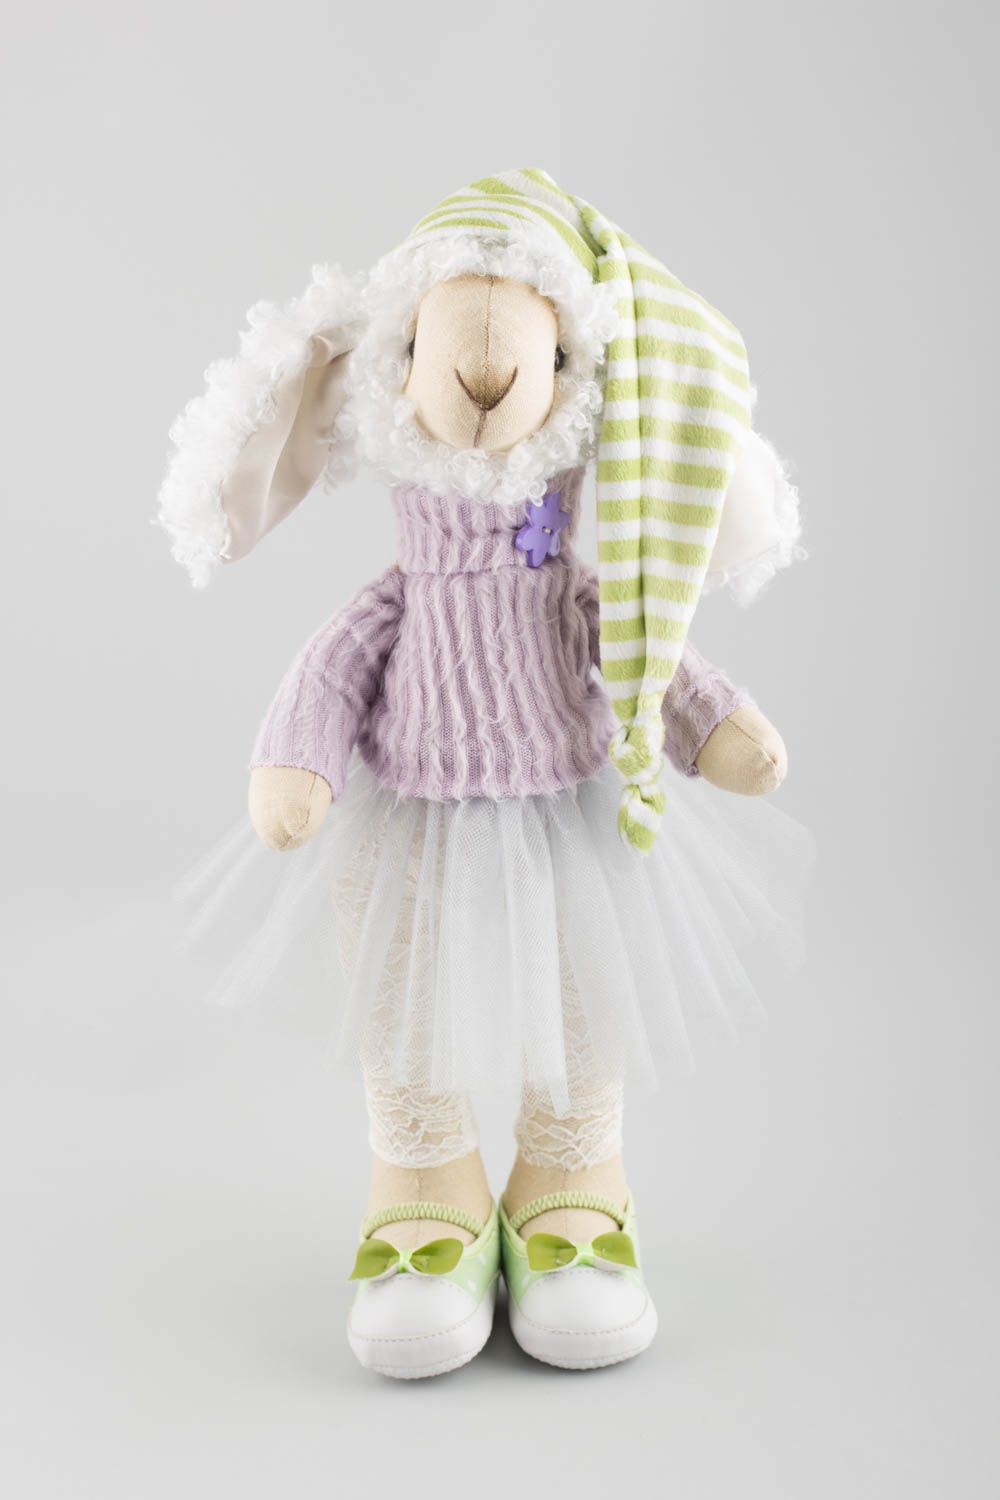 Textil Kuscheltier Schaf im Kleid niedlich Spielzeug für Kinder und Deko foto 2